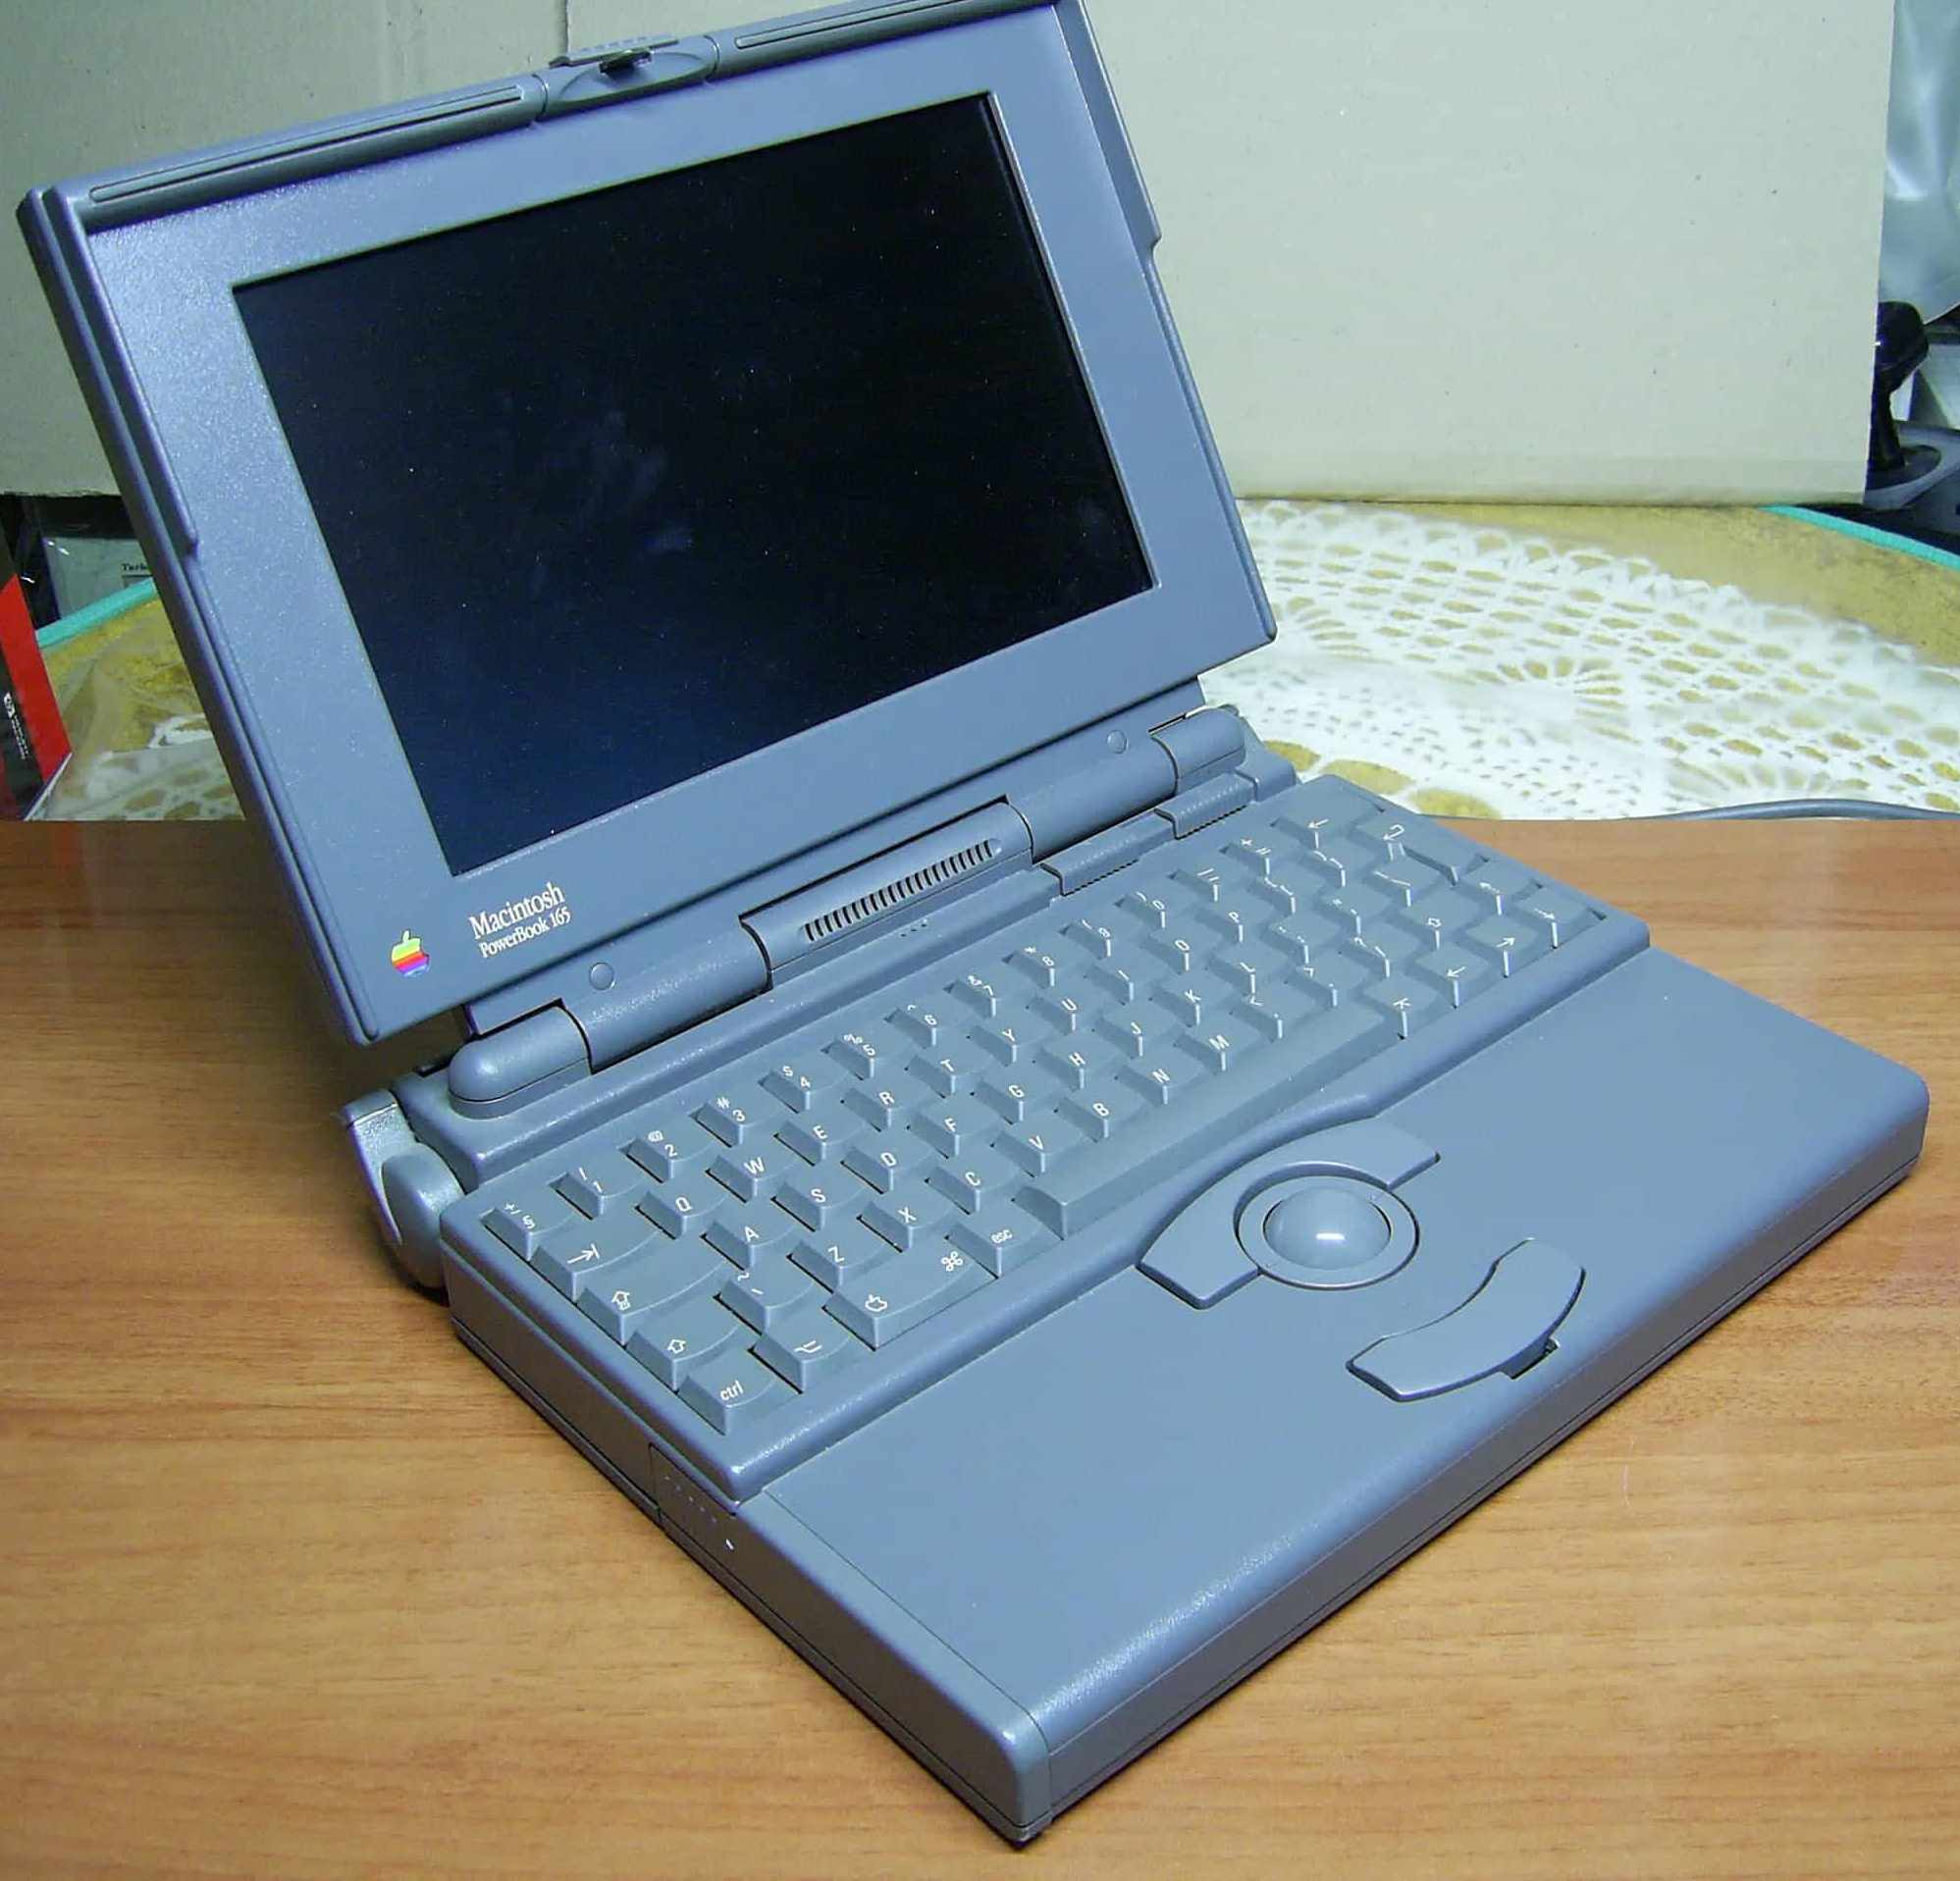 Этот день в истории Apple: выходит PowerBook 165 самый доступный по цене ноутбук Apple